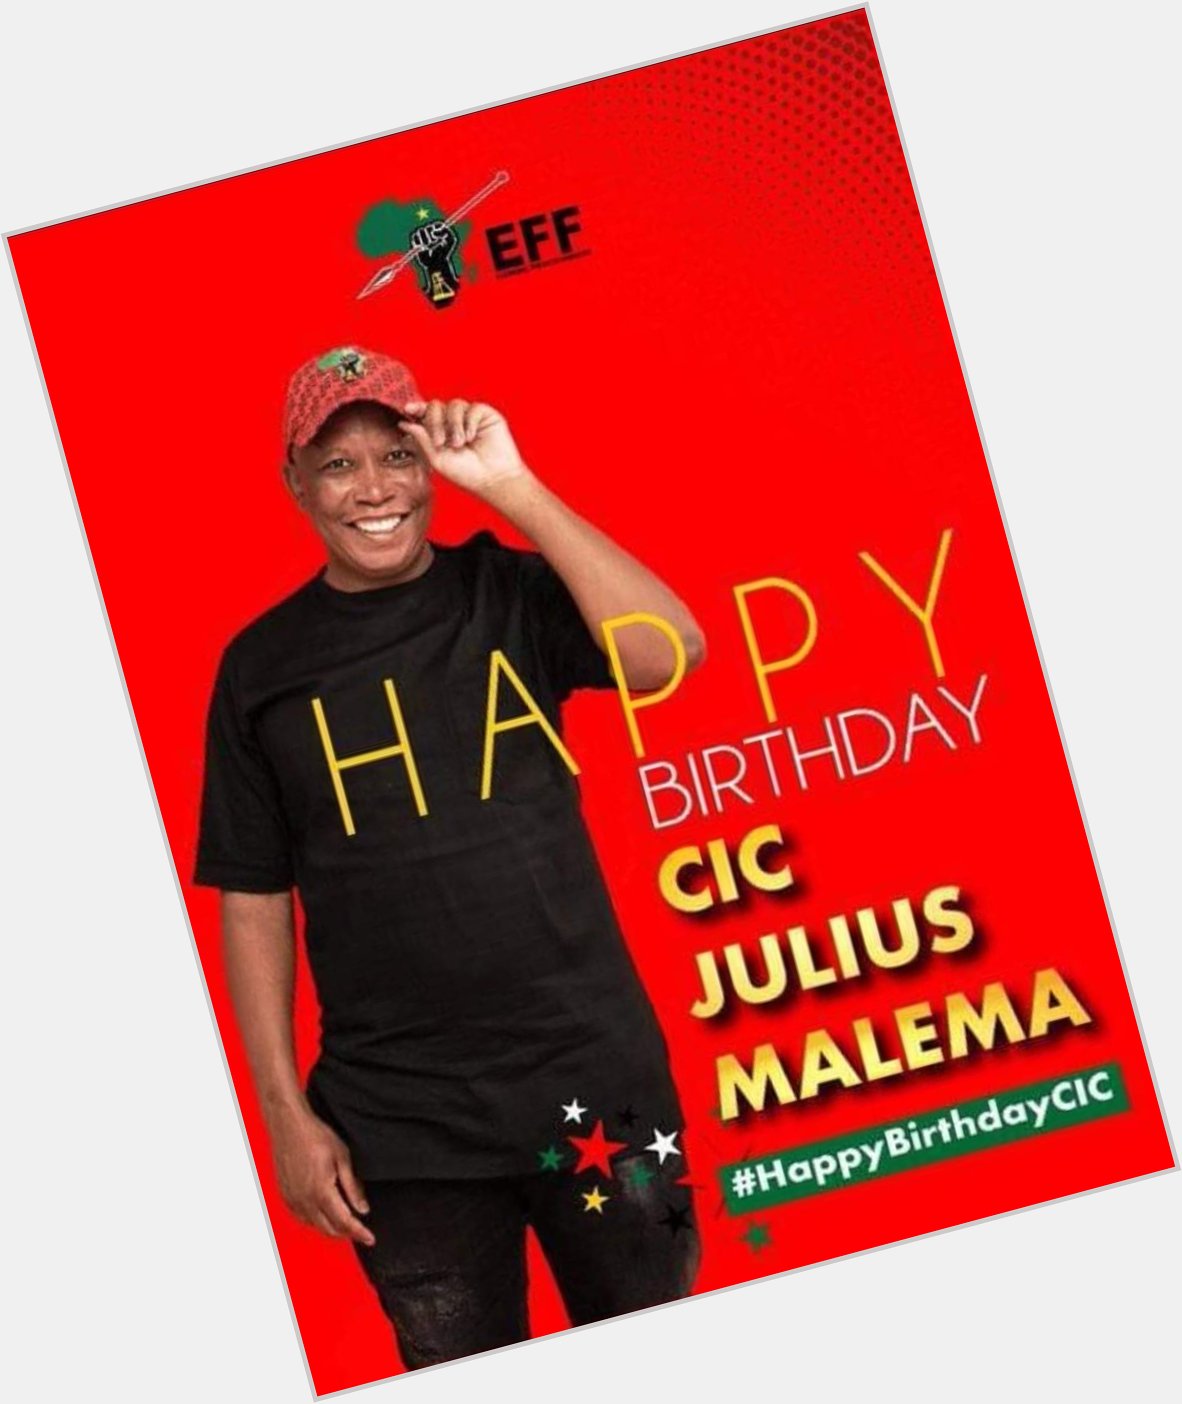 Happy birthday Mr president malema 